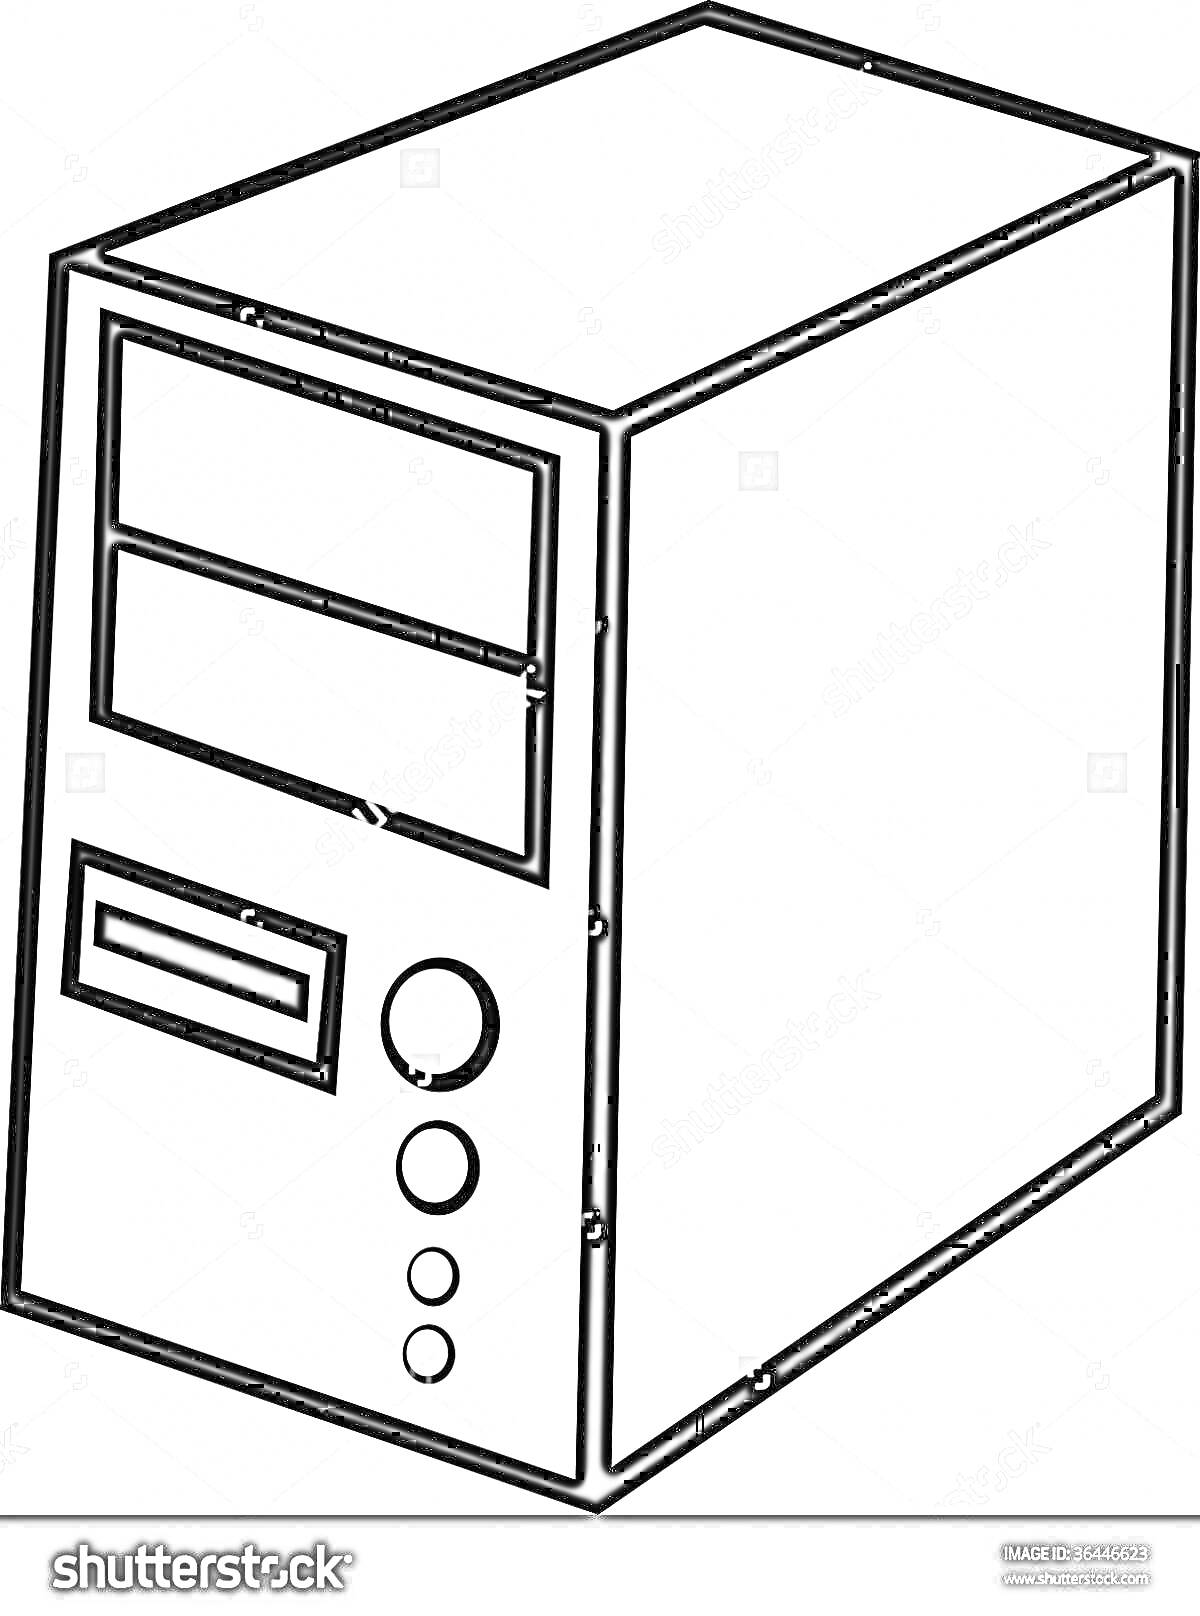 Раскраска Компьютерный корпус/системный блок с дисководом и кнопками